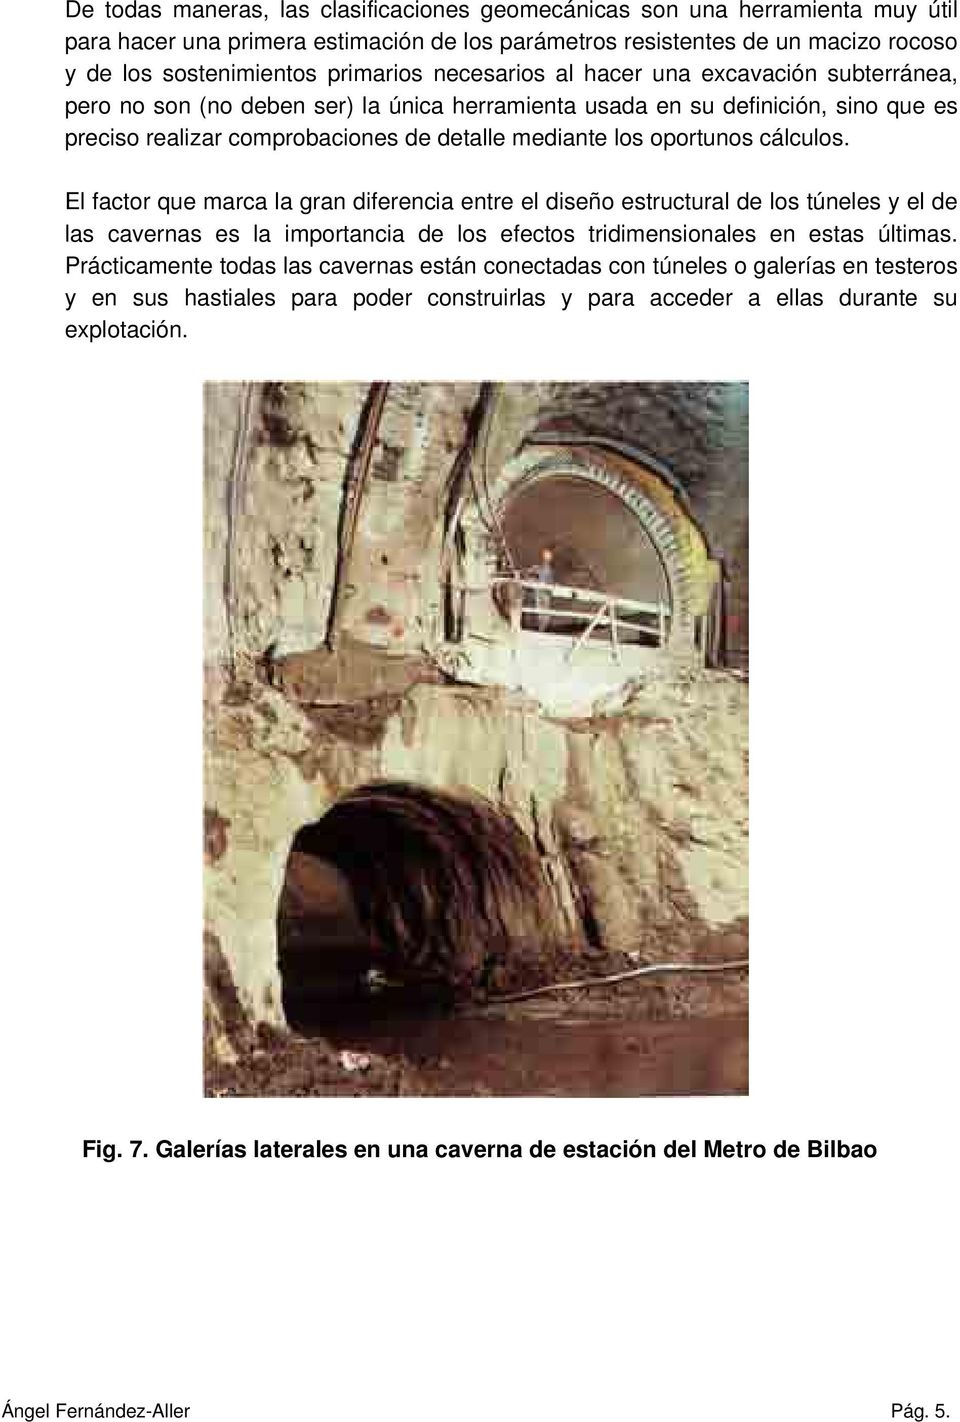 cálculos. El factor que marca la gran diferencia entre el diseño estructural de los túneles y el de las cavernas es la importancia de los efectos tridimensionales en estas últimas.